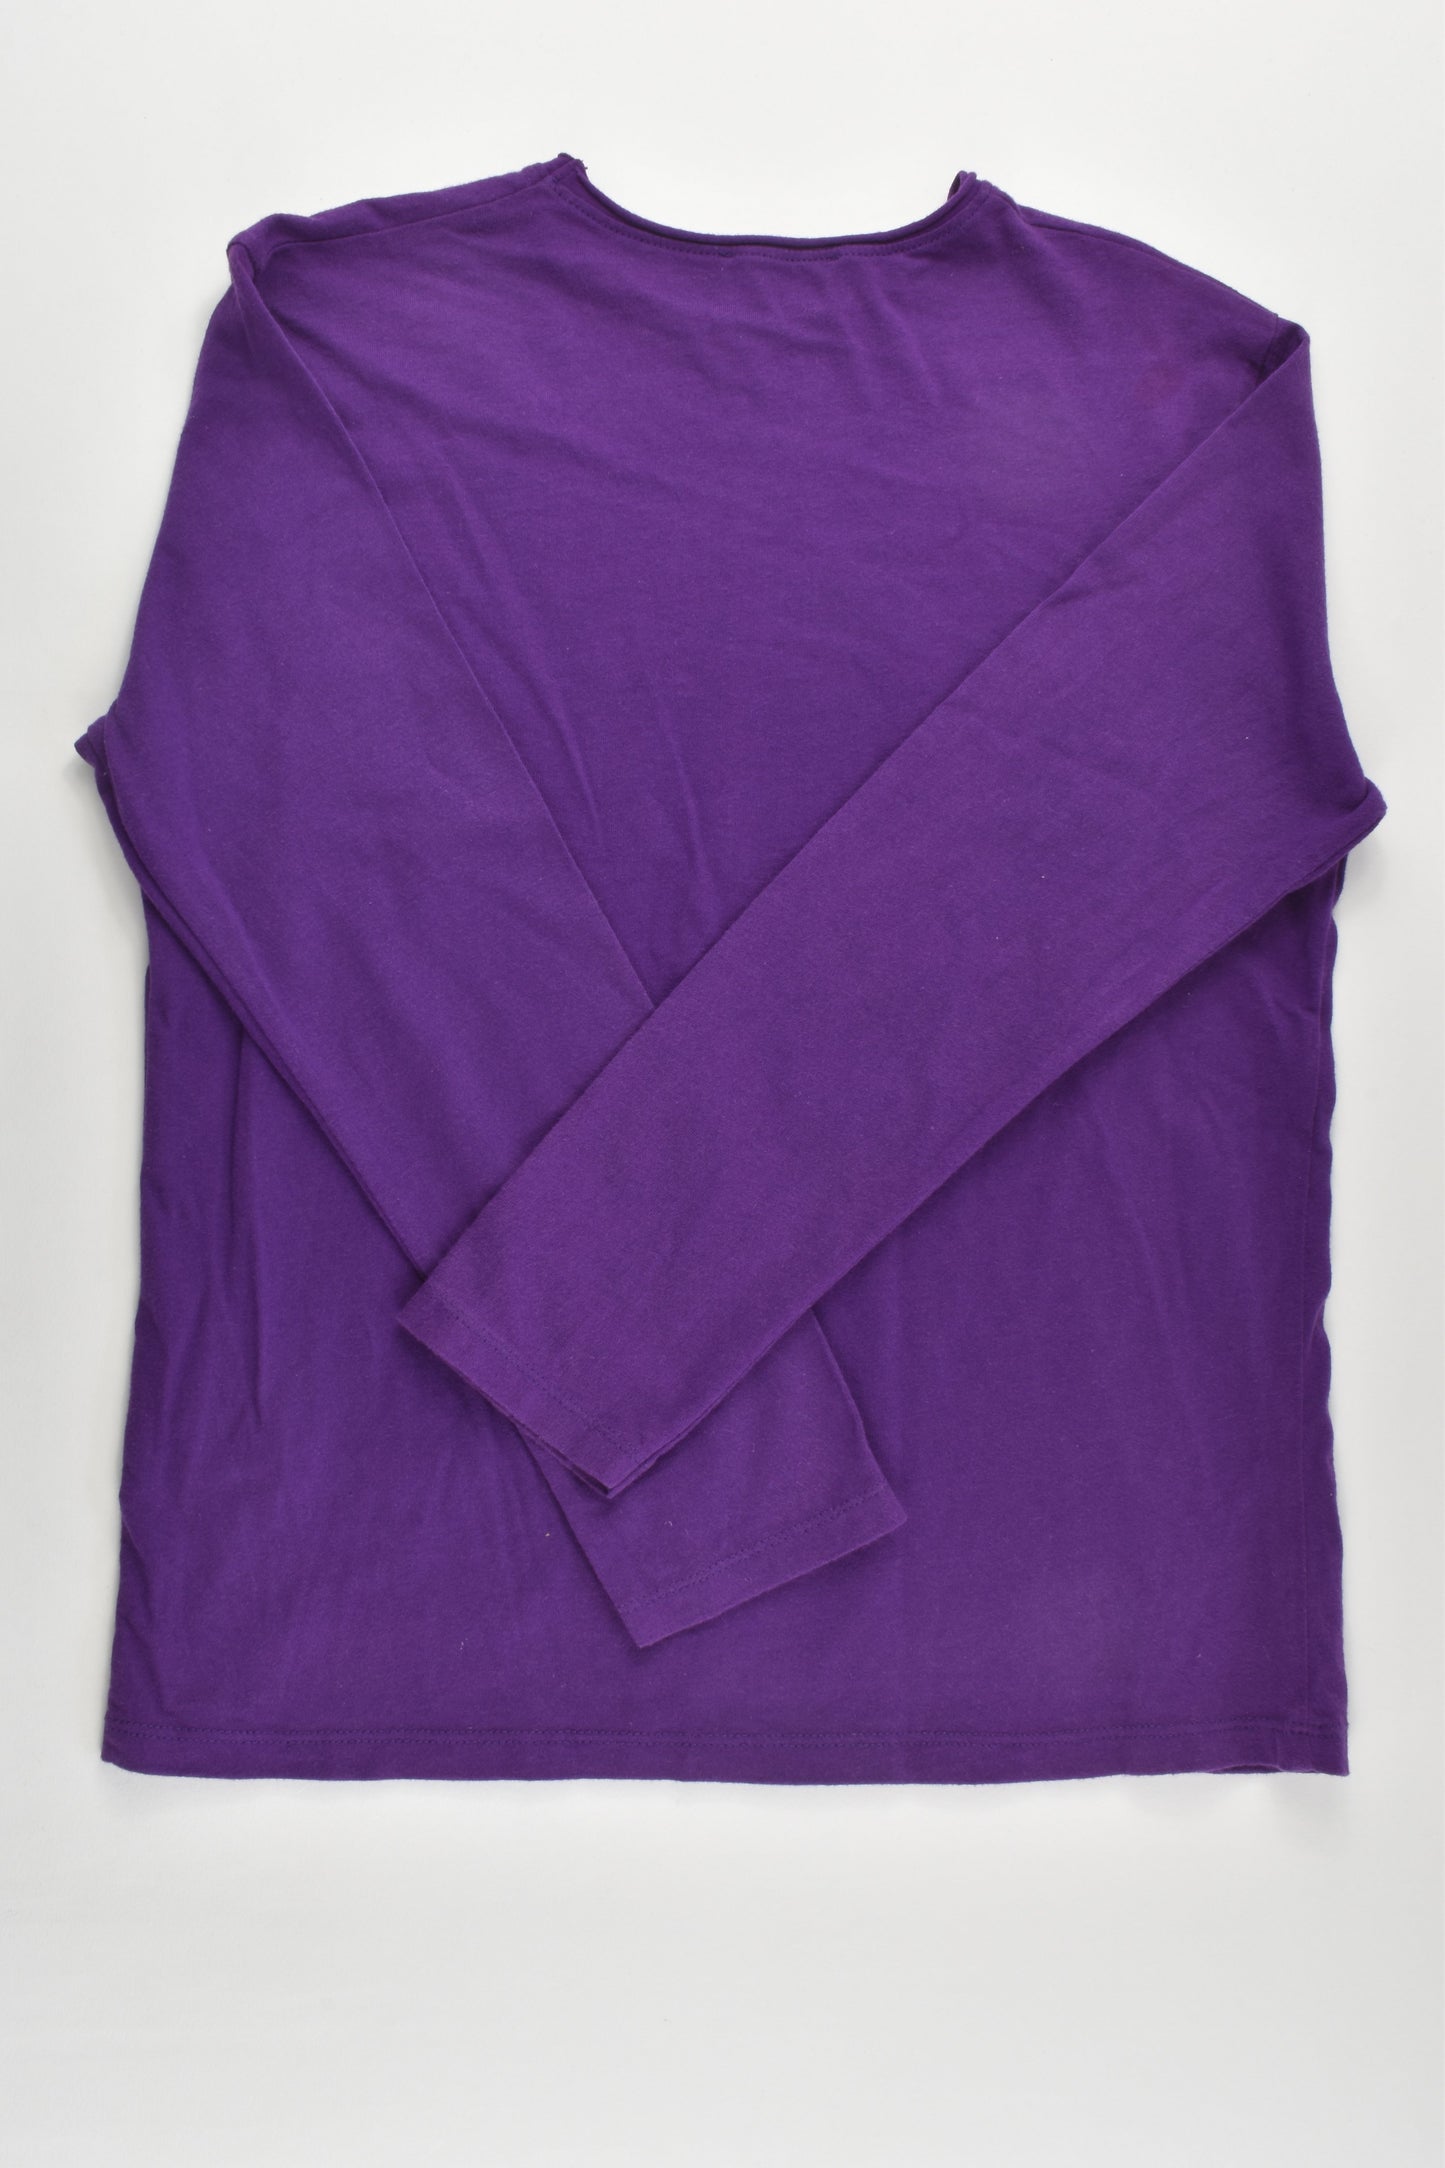 Zara Size 8 (128 cm) 'Grunge' Top